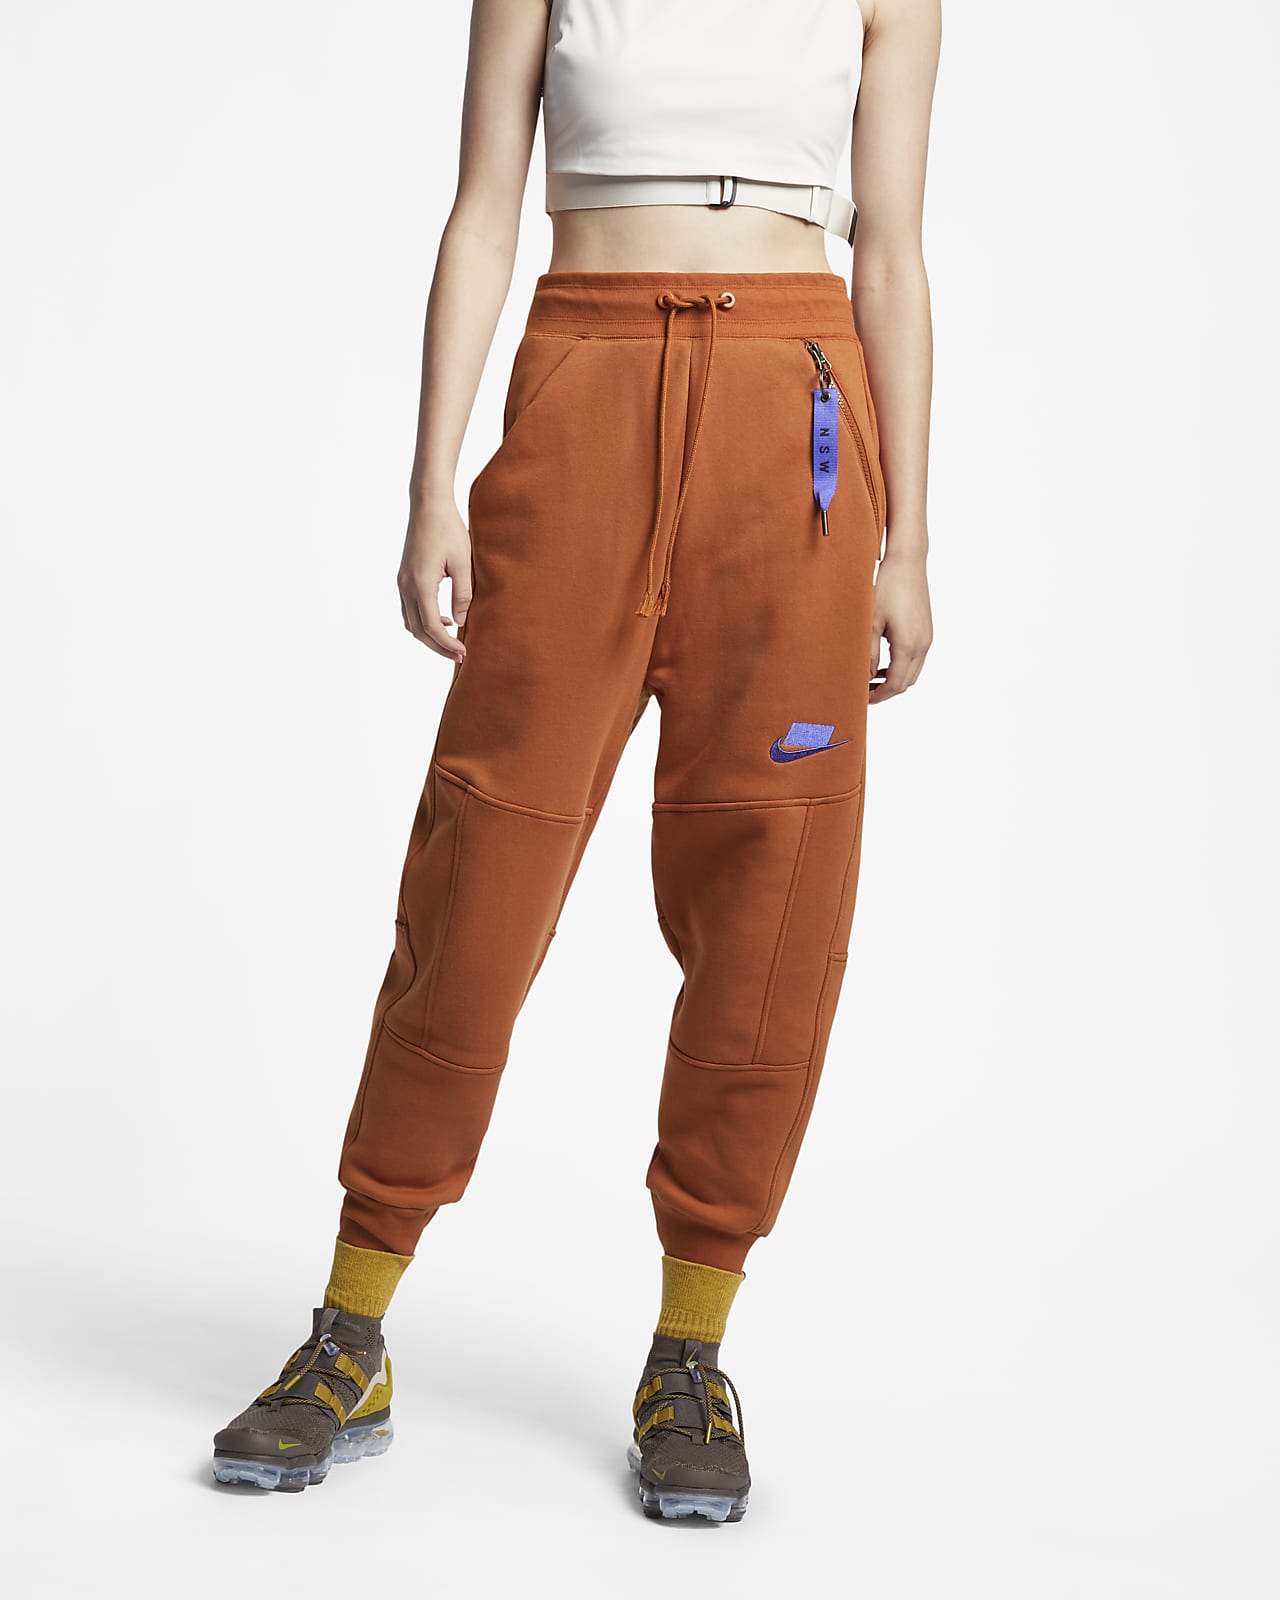 Pantalon de jogging en tissu Fleece Nike Sportswear NSW pour Femme